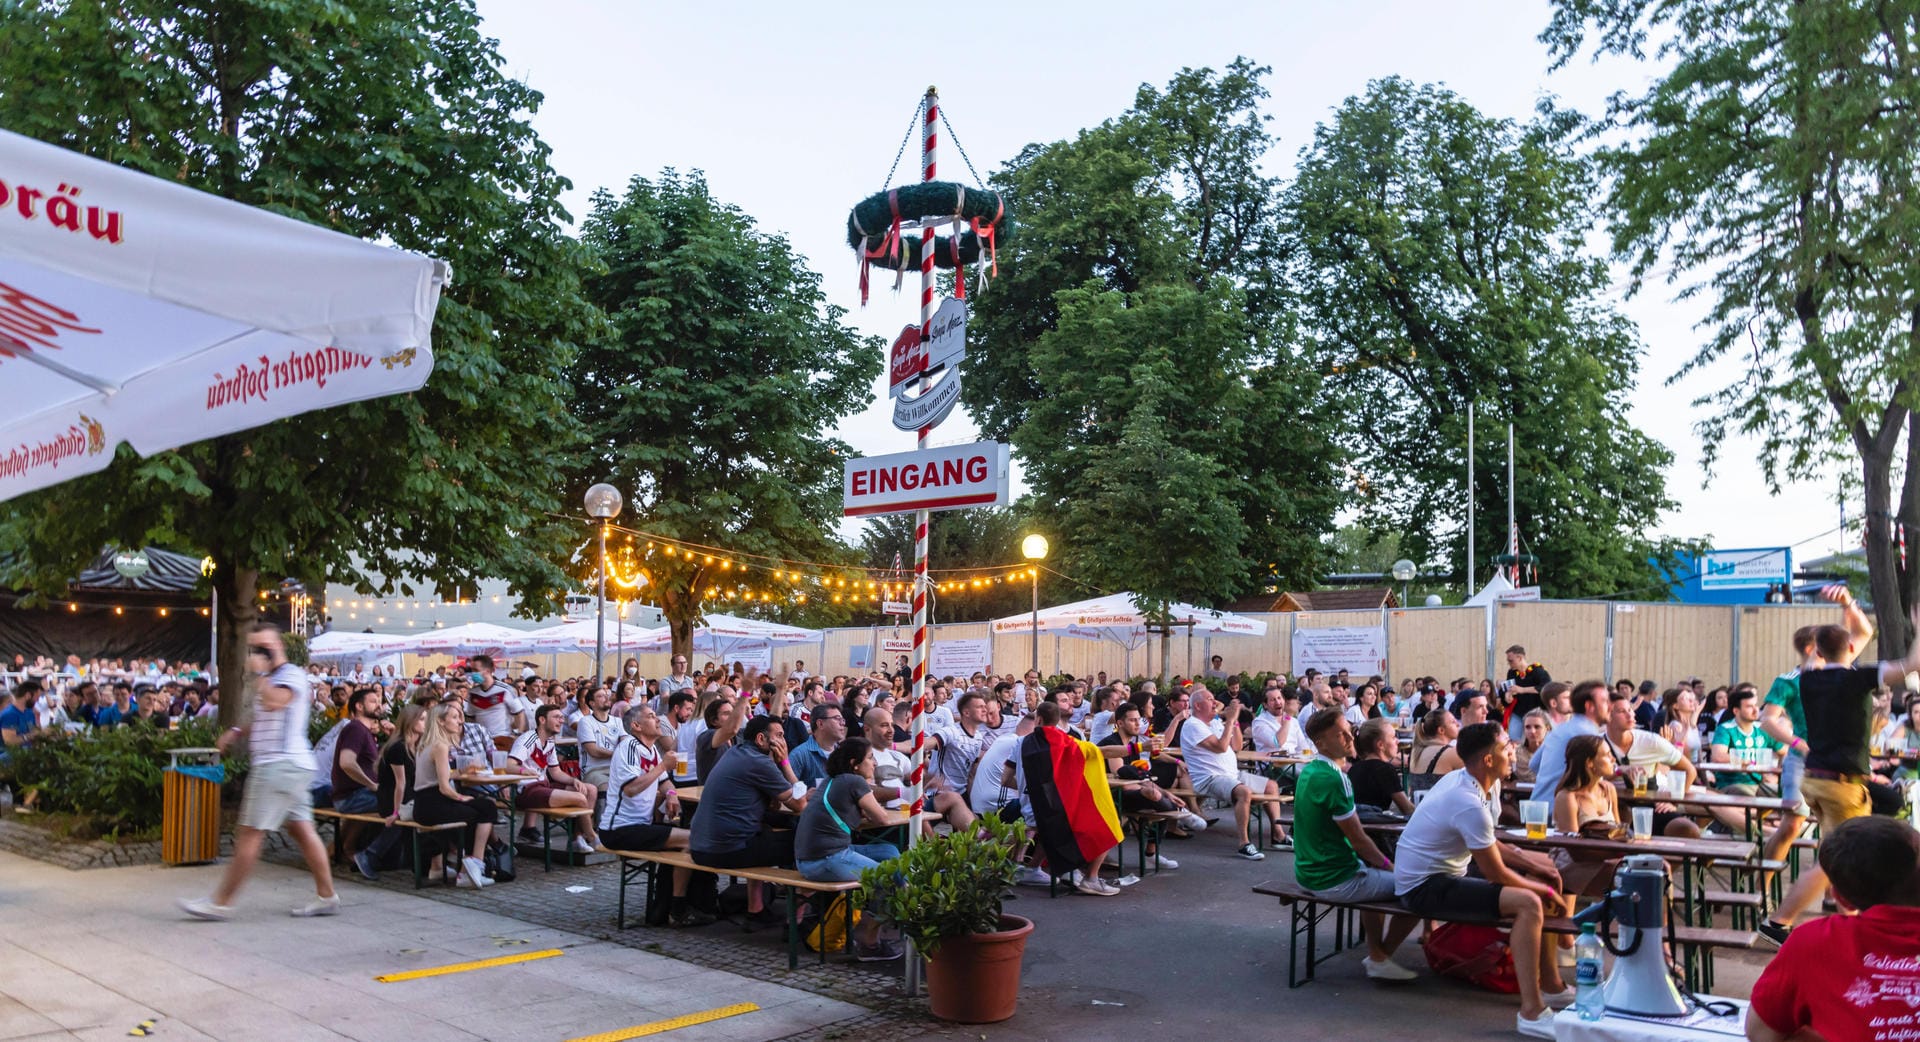 Bestes Wetter beim Public Viewing im Biergarten im Schlossgarten Stuttgart: Hunderte Fans verfolgten hier gemeinsam das erste Deutschland-Spiel.